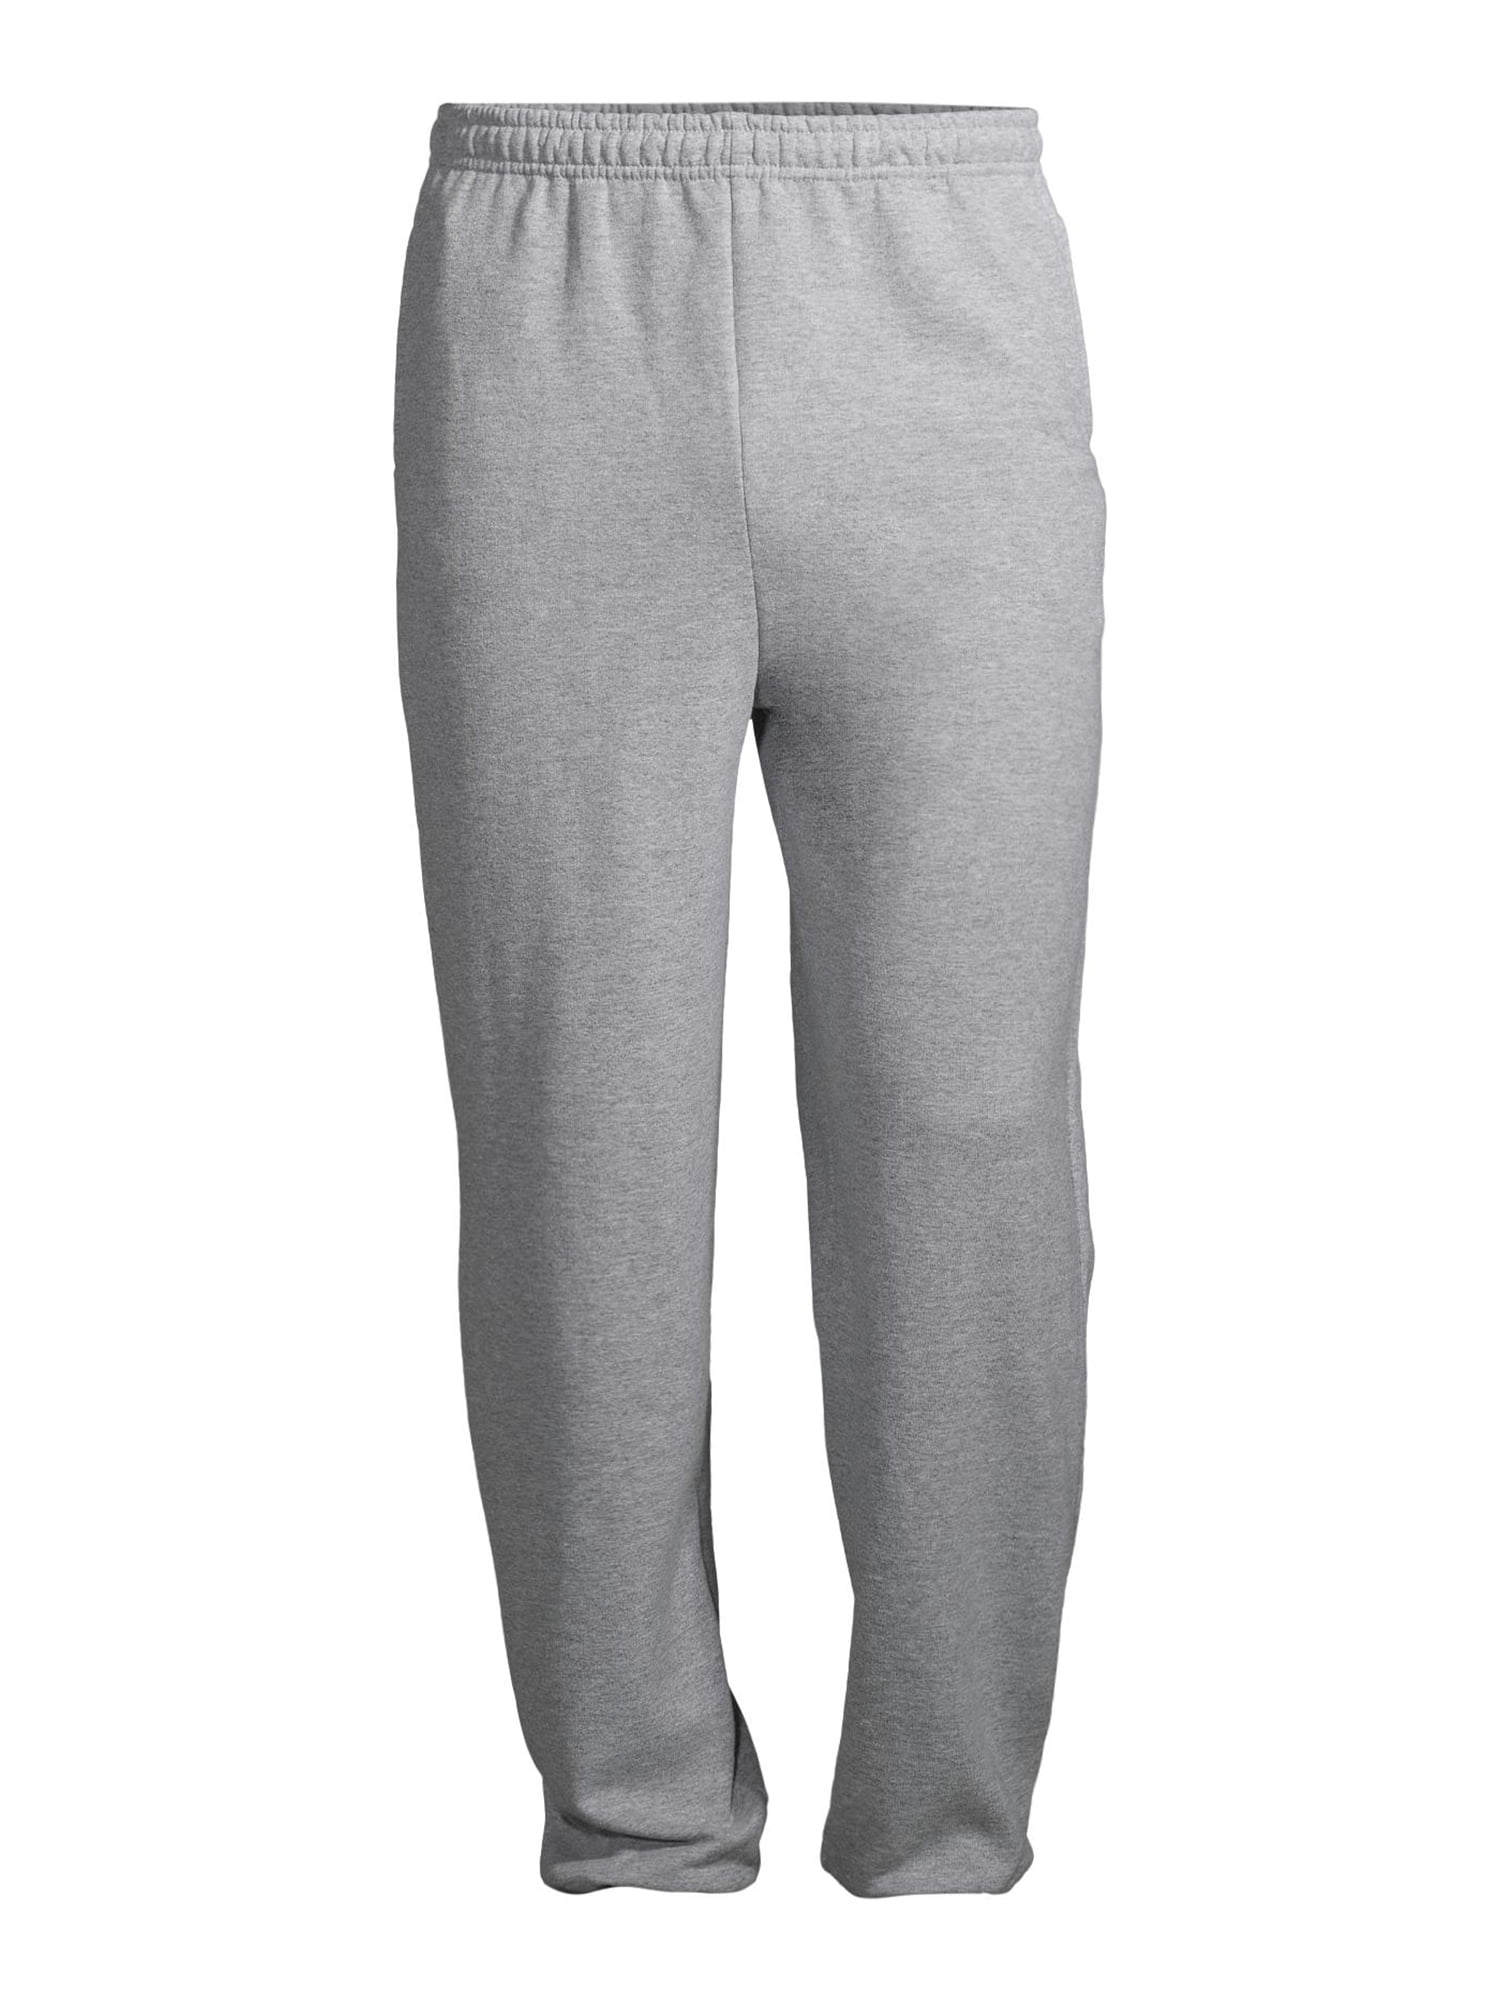 Gildan Unisex Fleece Elastic Bottom Pocketed Sweatpants, up to Size 2XL ...